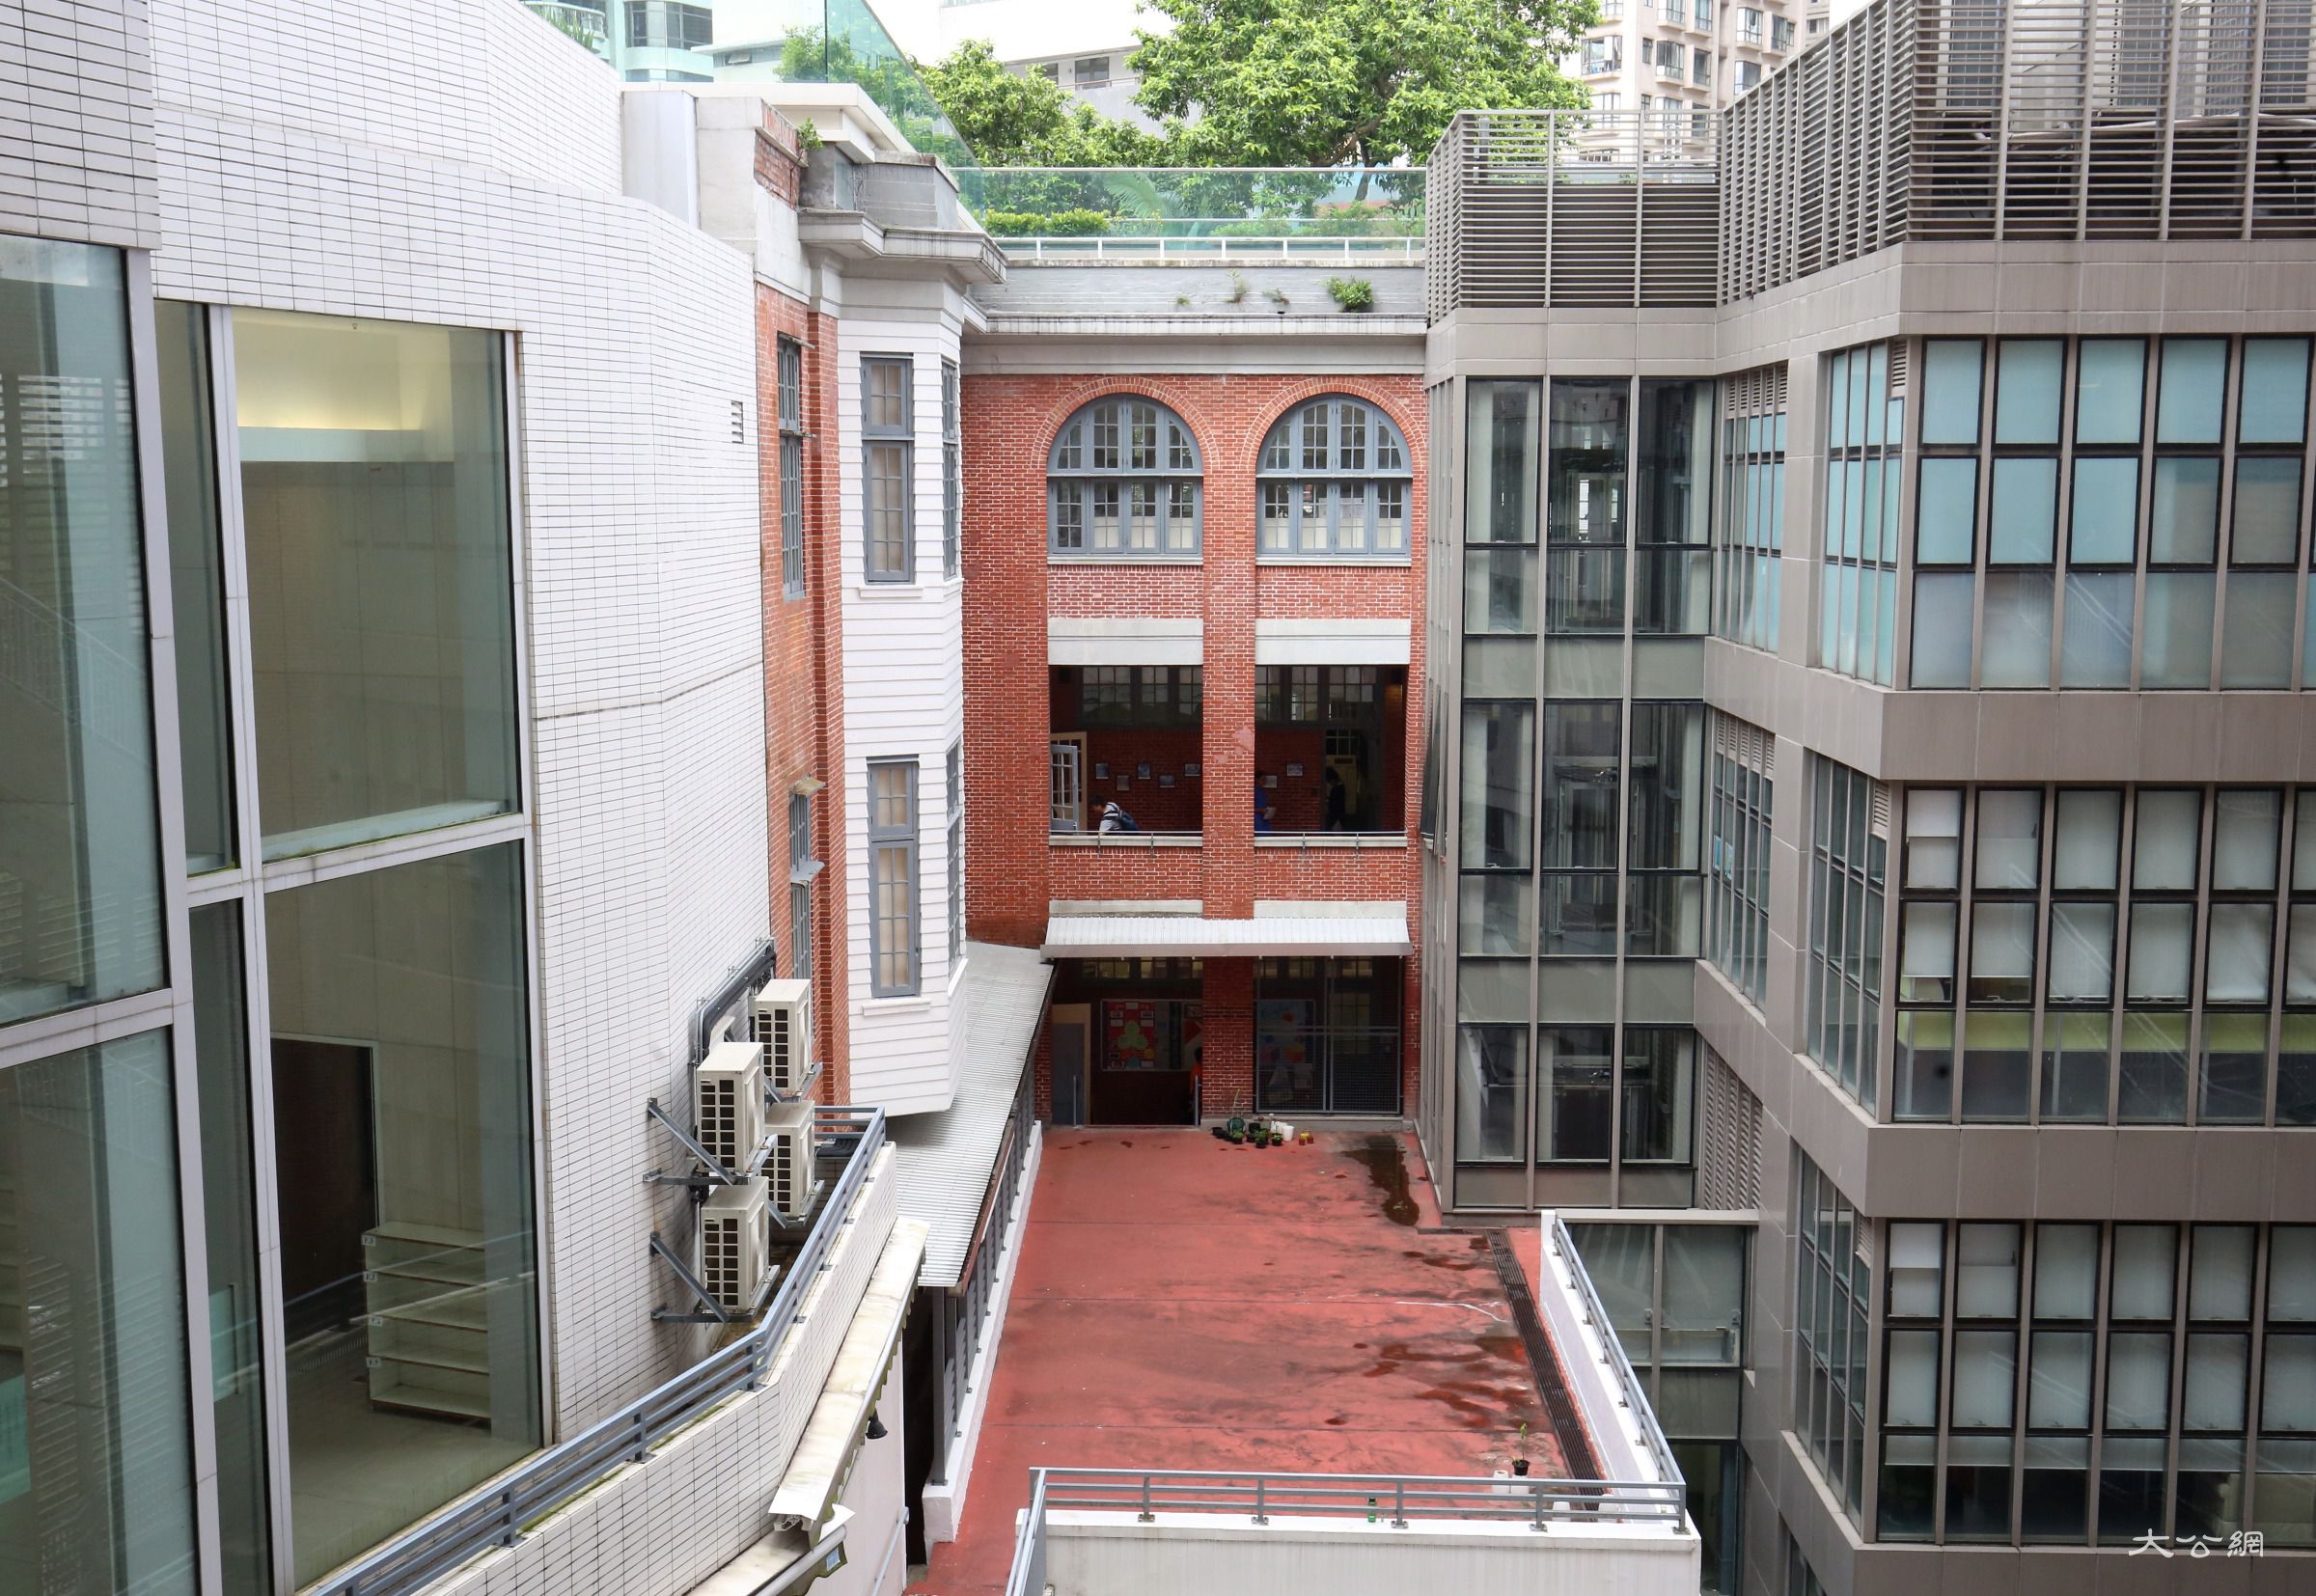 香港圣保罗男女中学校图片